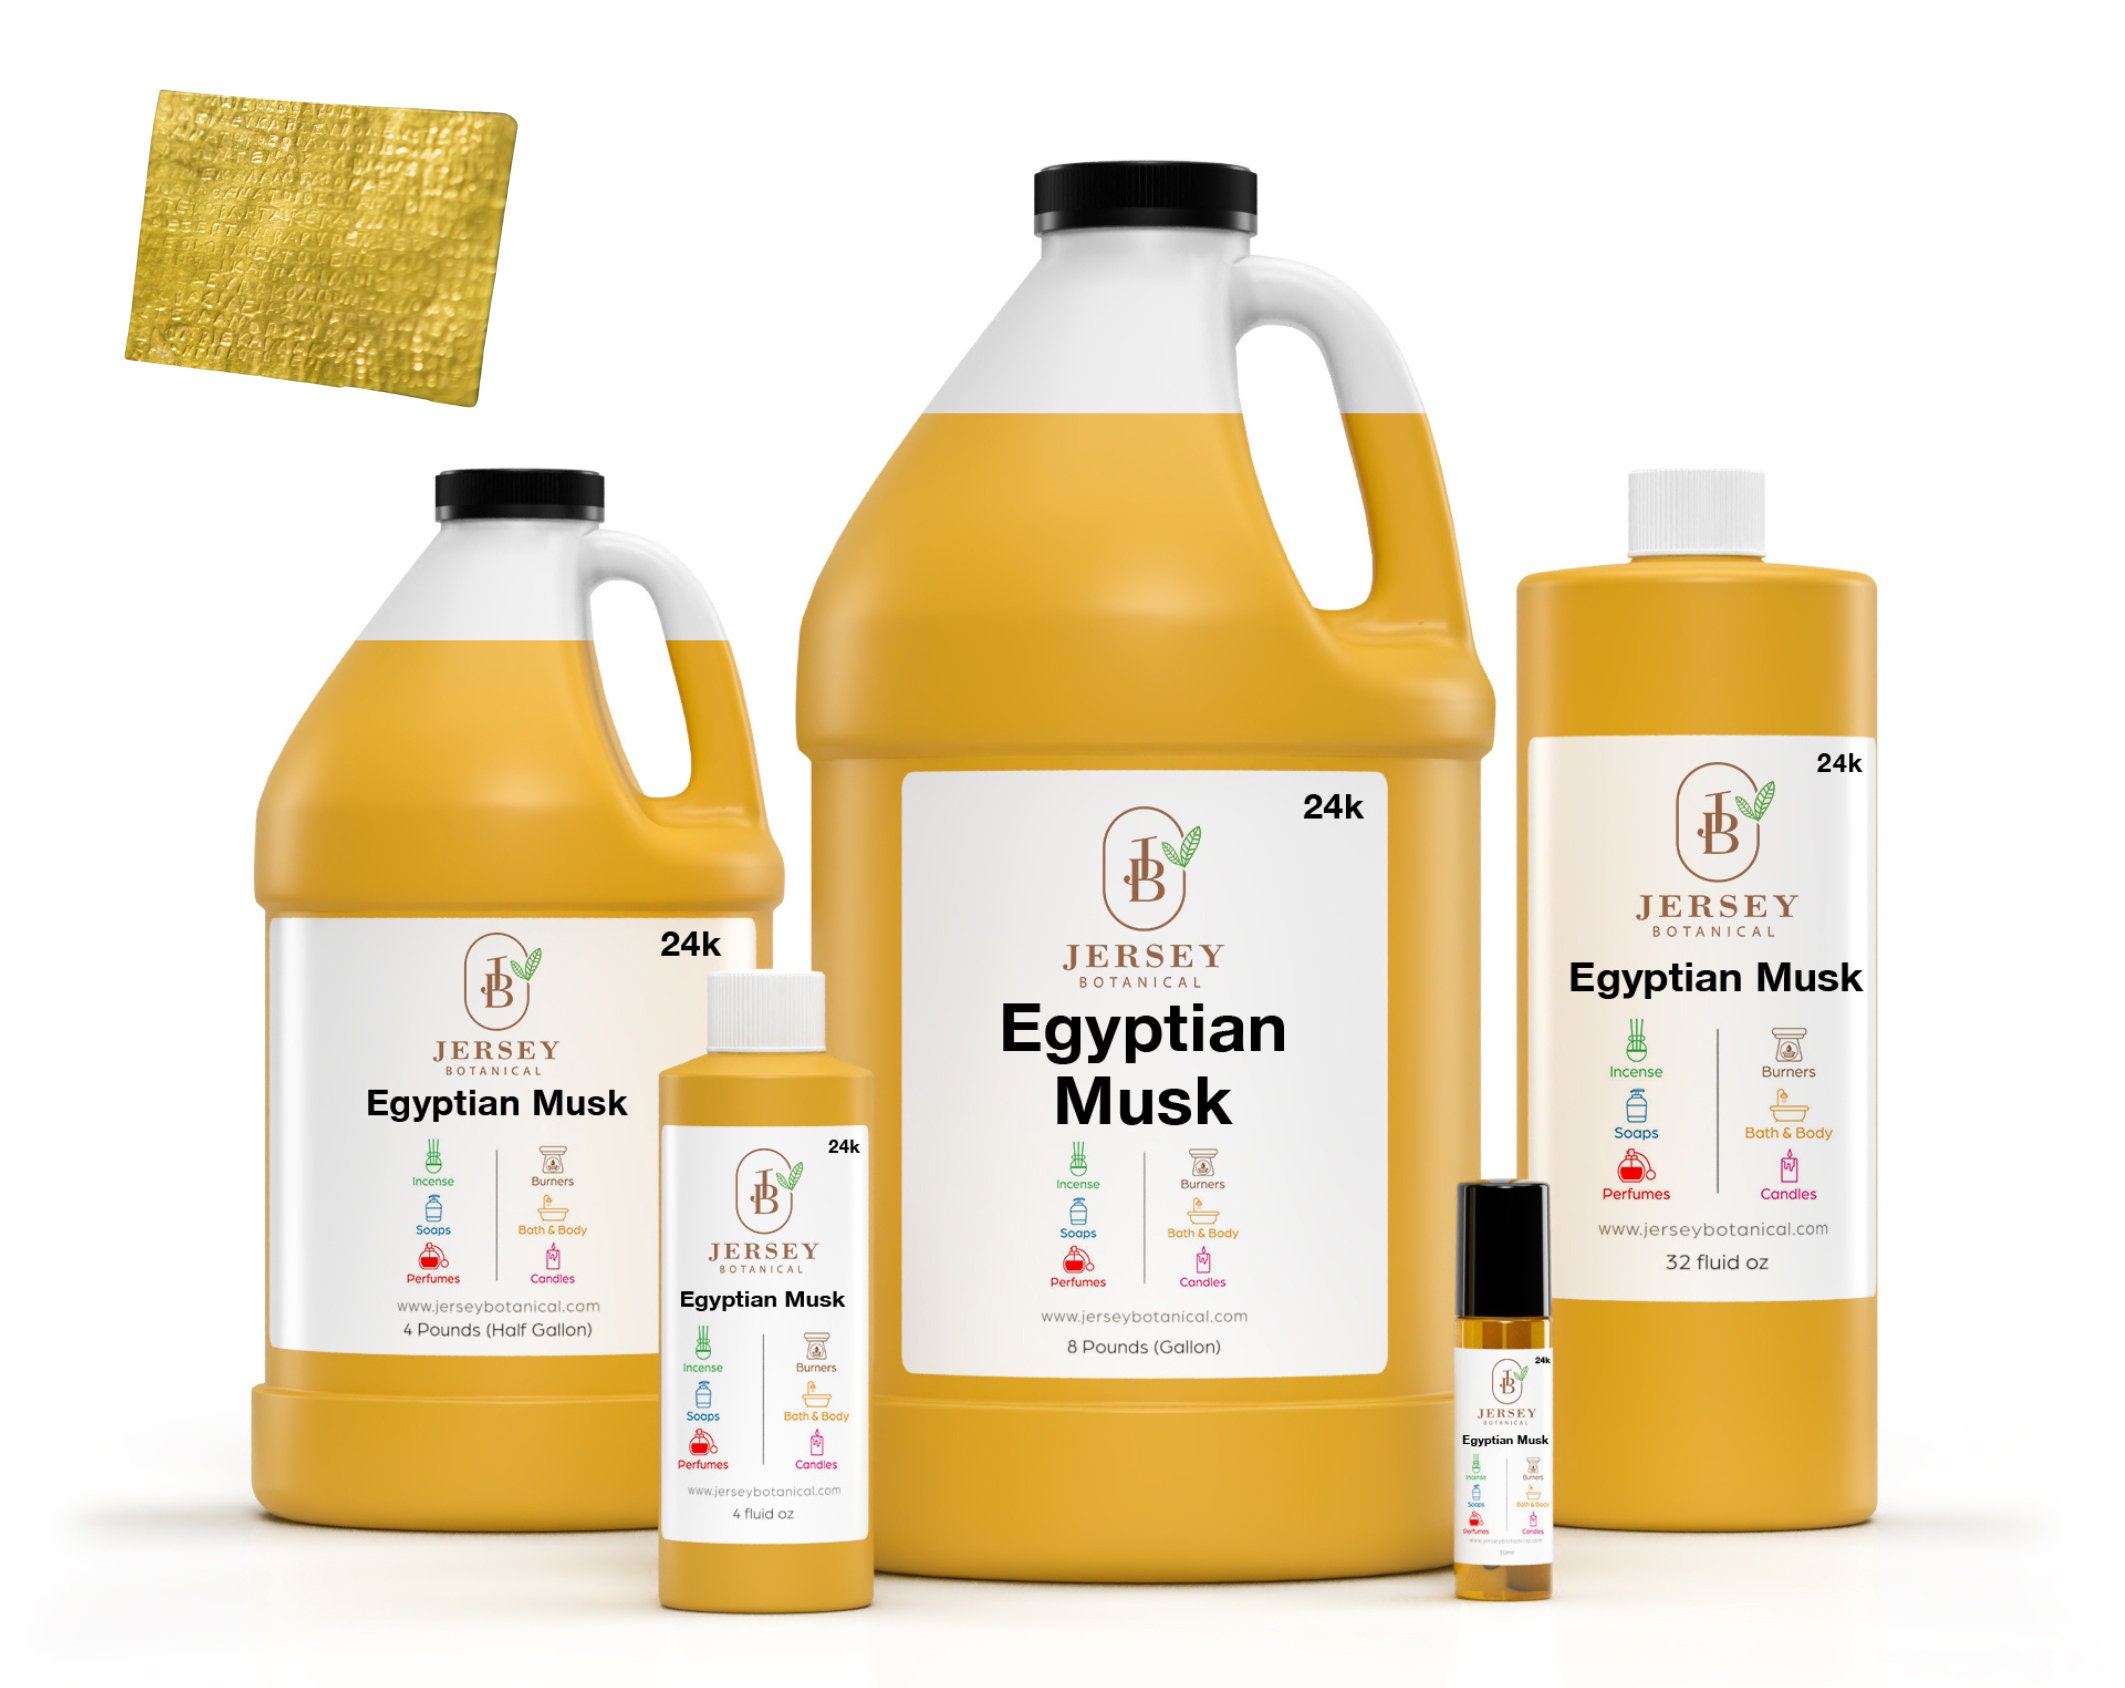 Egyptian Amber Fragrance Oil